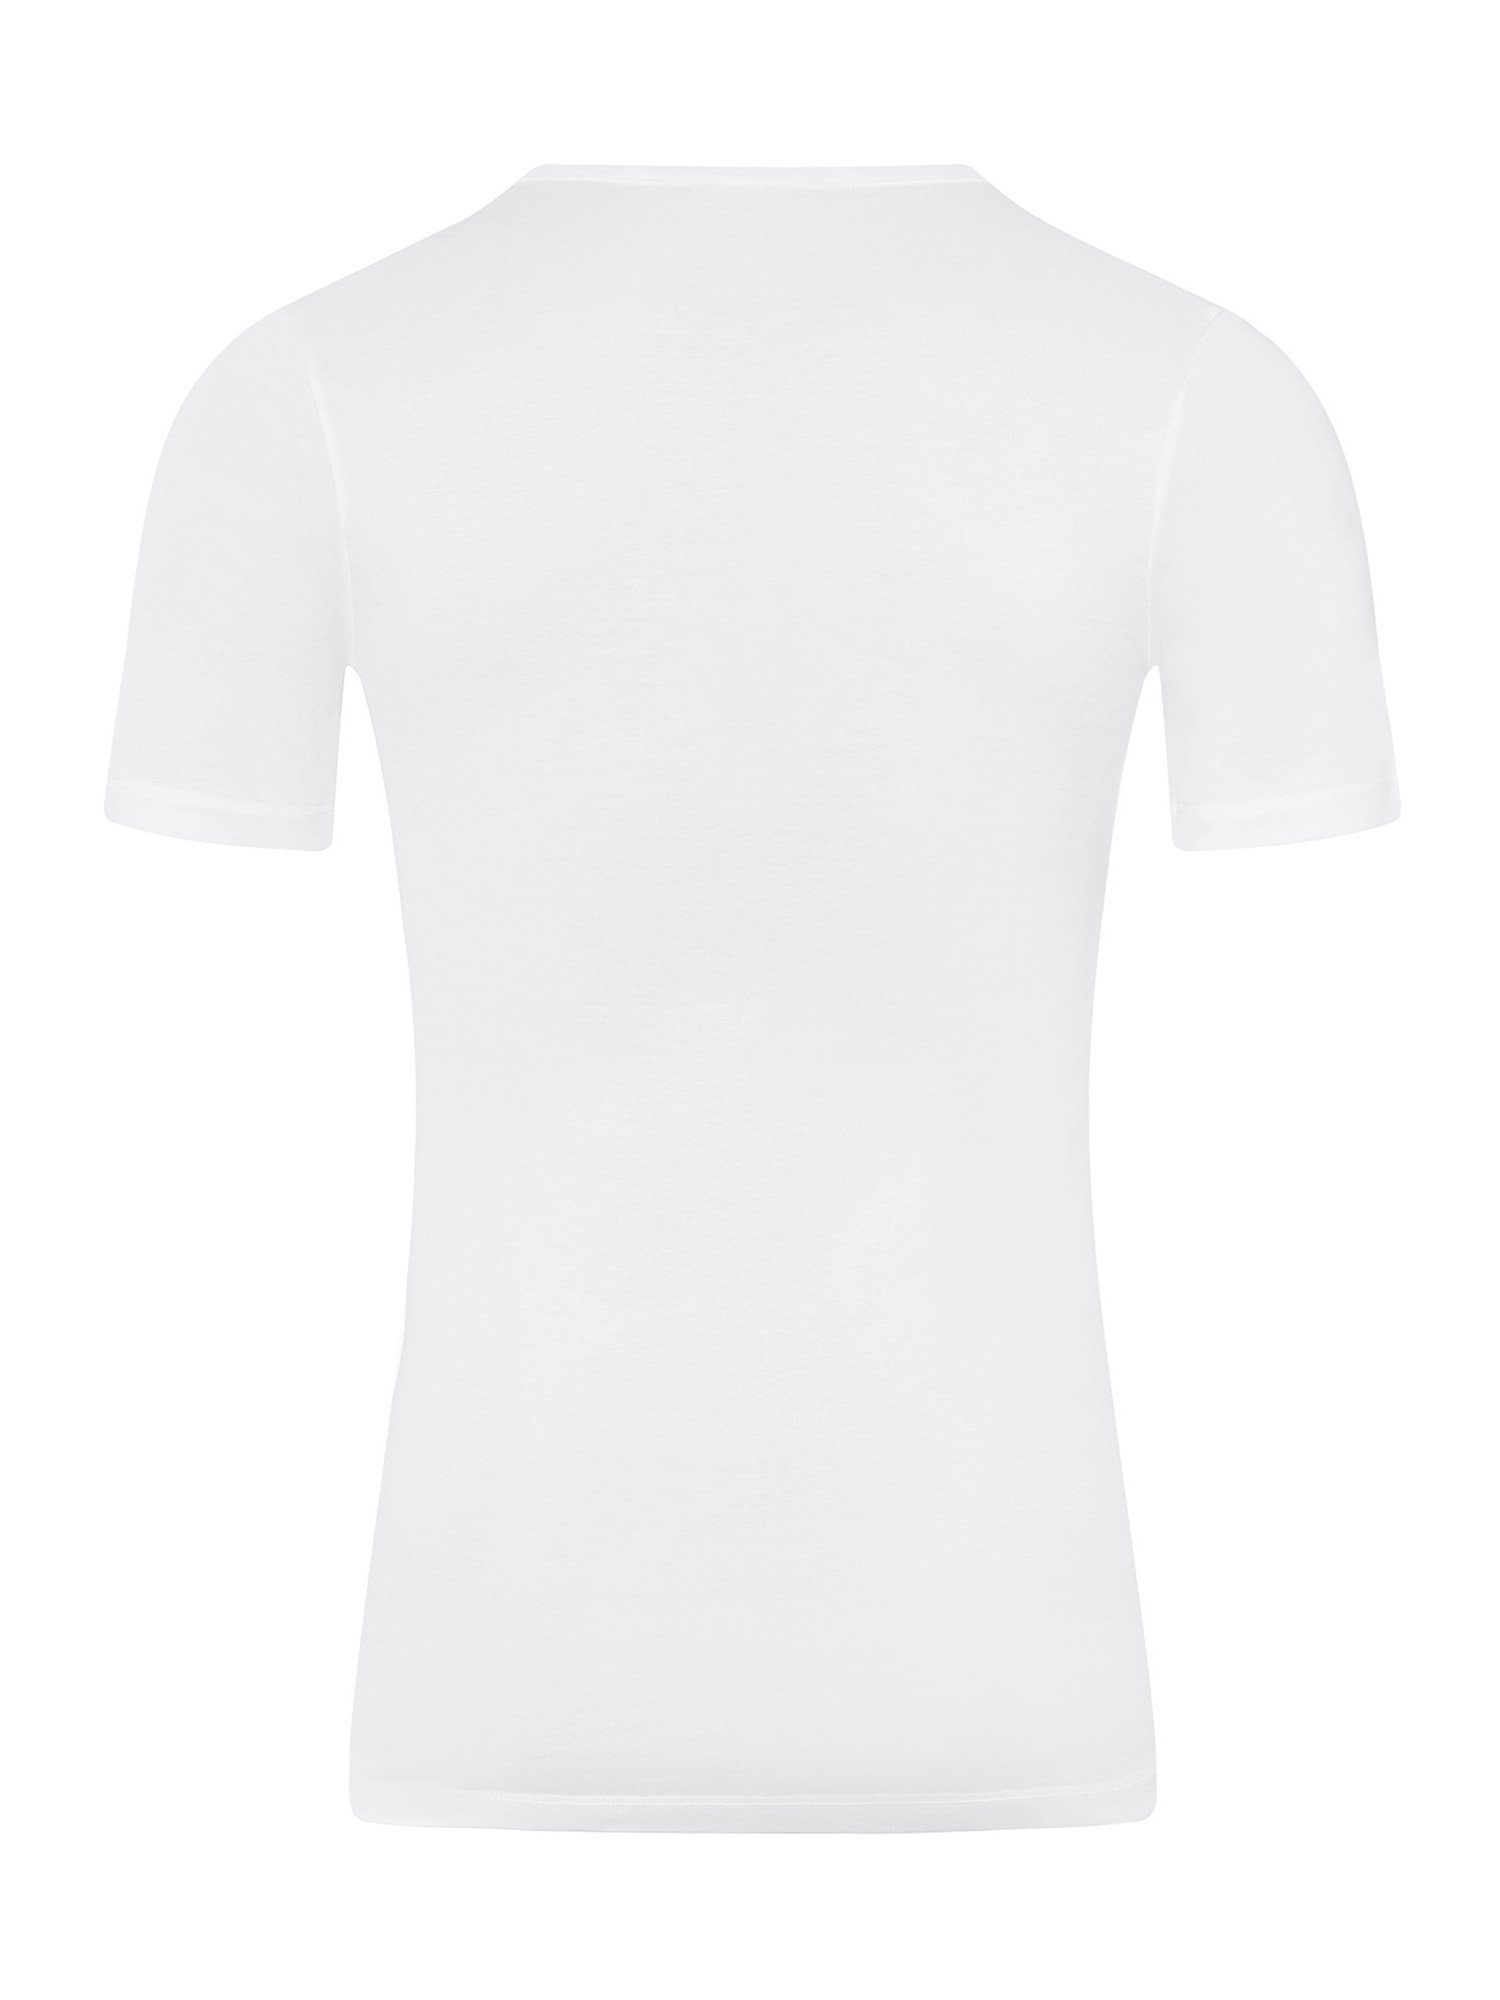 Hanro Pure V-Shirt t-shirt Cotton v-ausschnitt v-neck